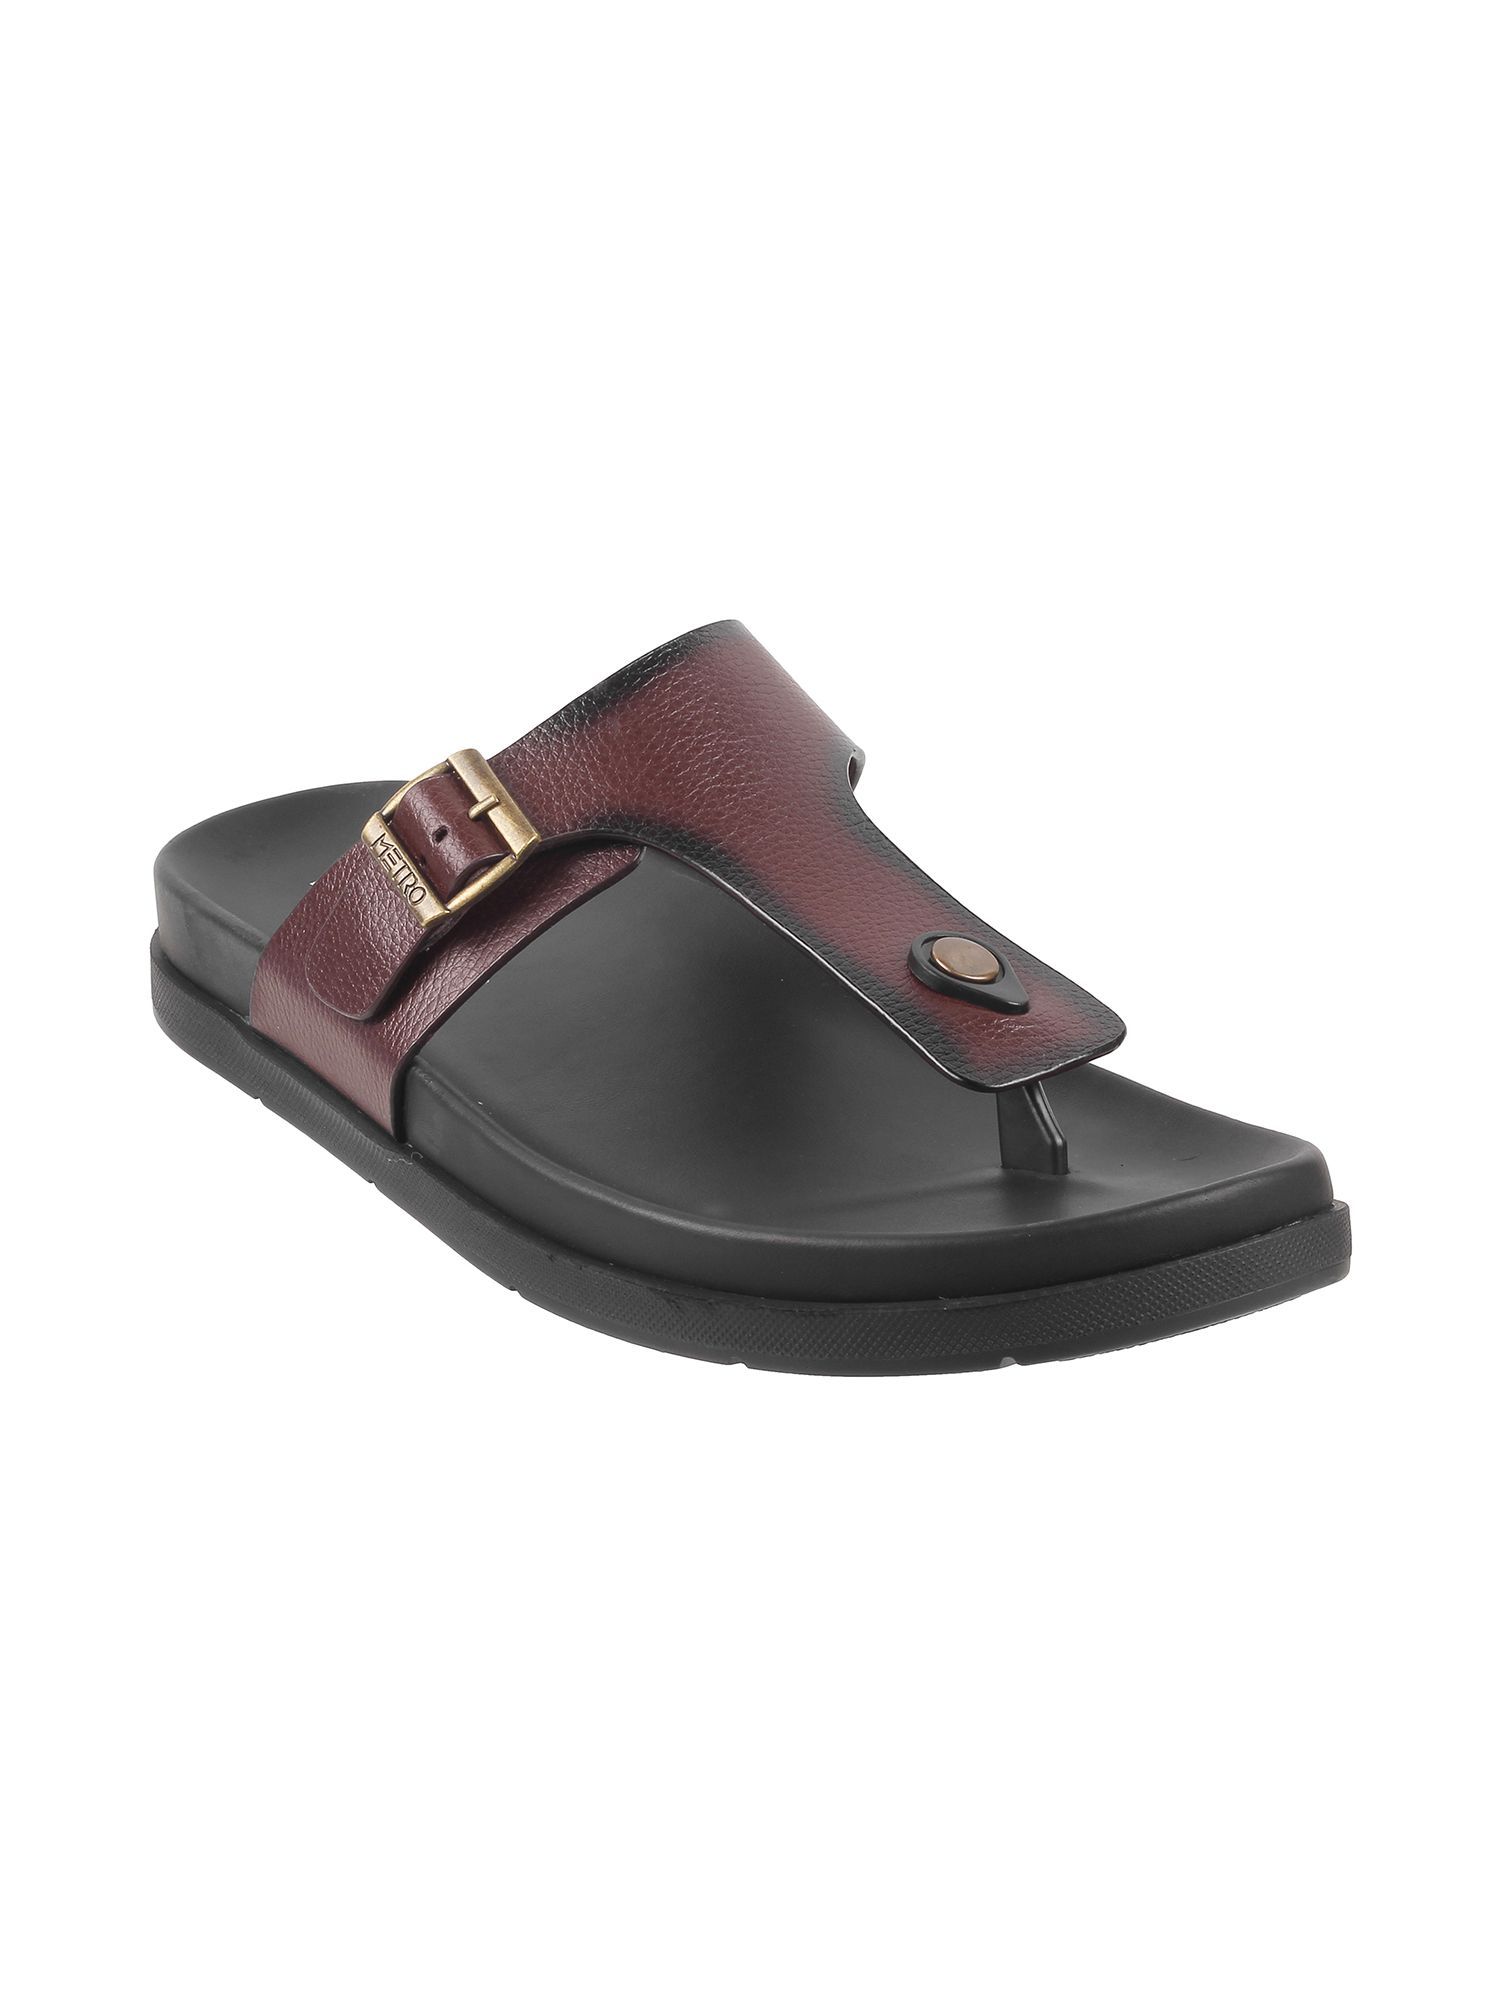 Buy Black Sandals for Men by Metro Online | Ajio.com-sgquangbinhtourist.com.vn